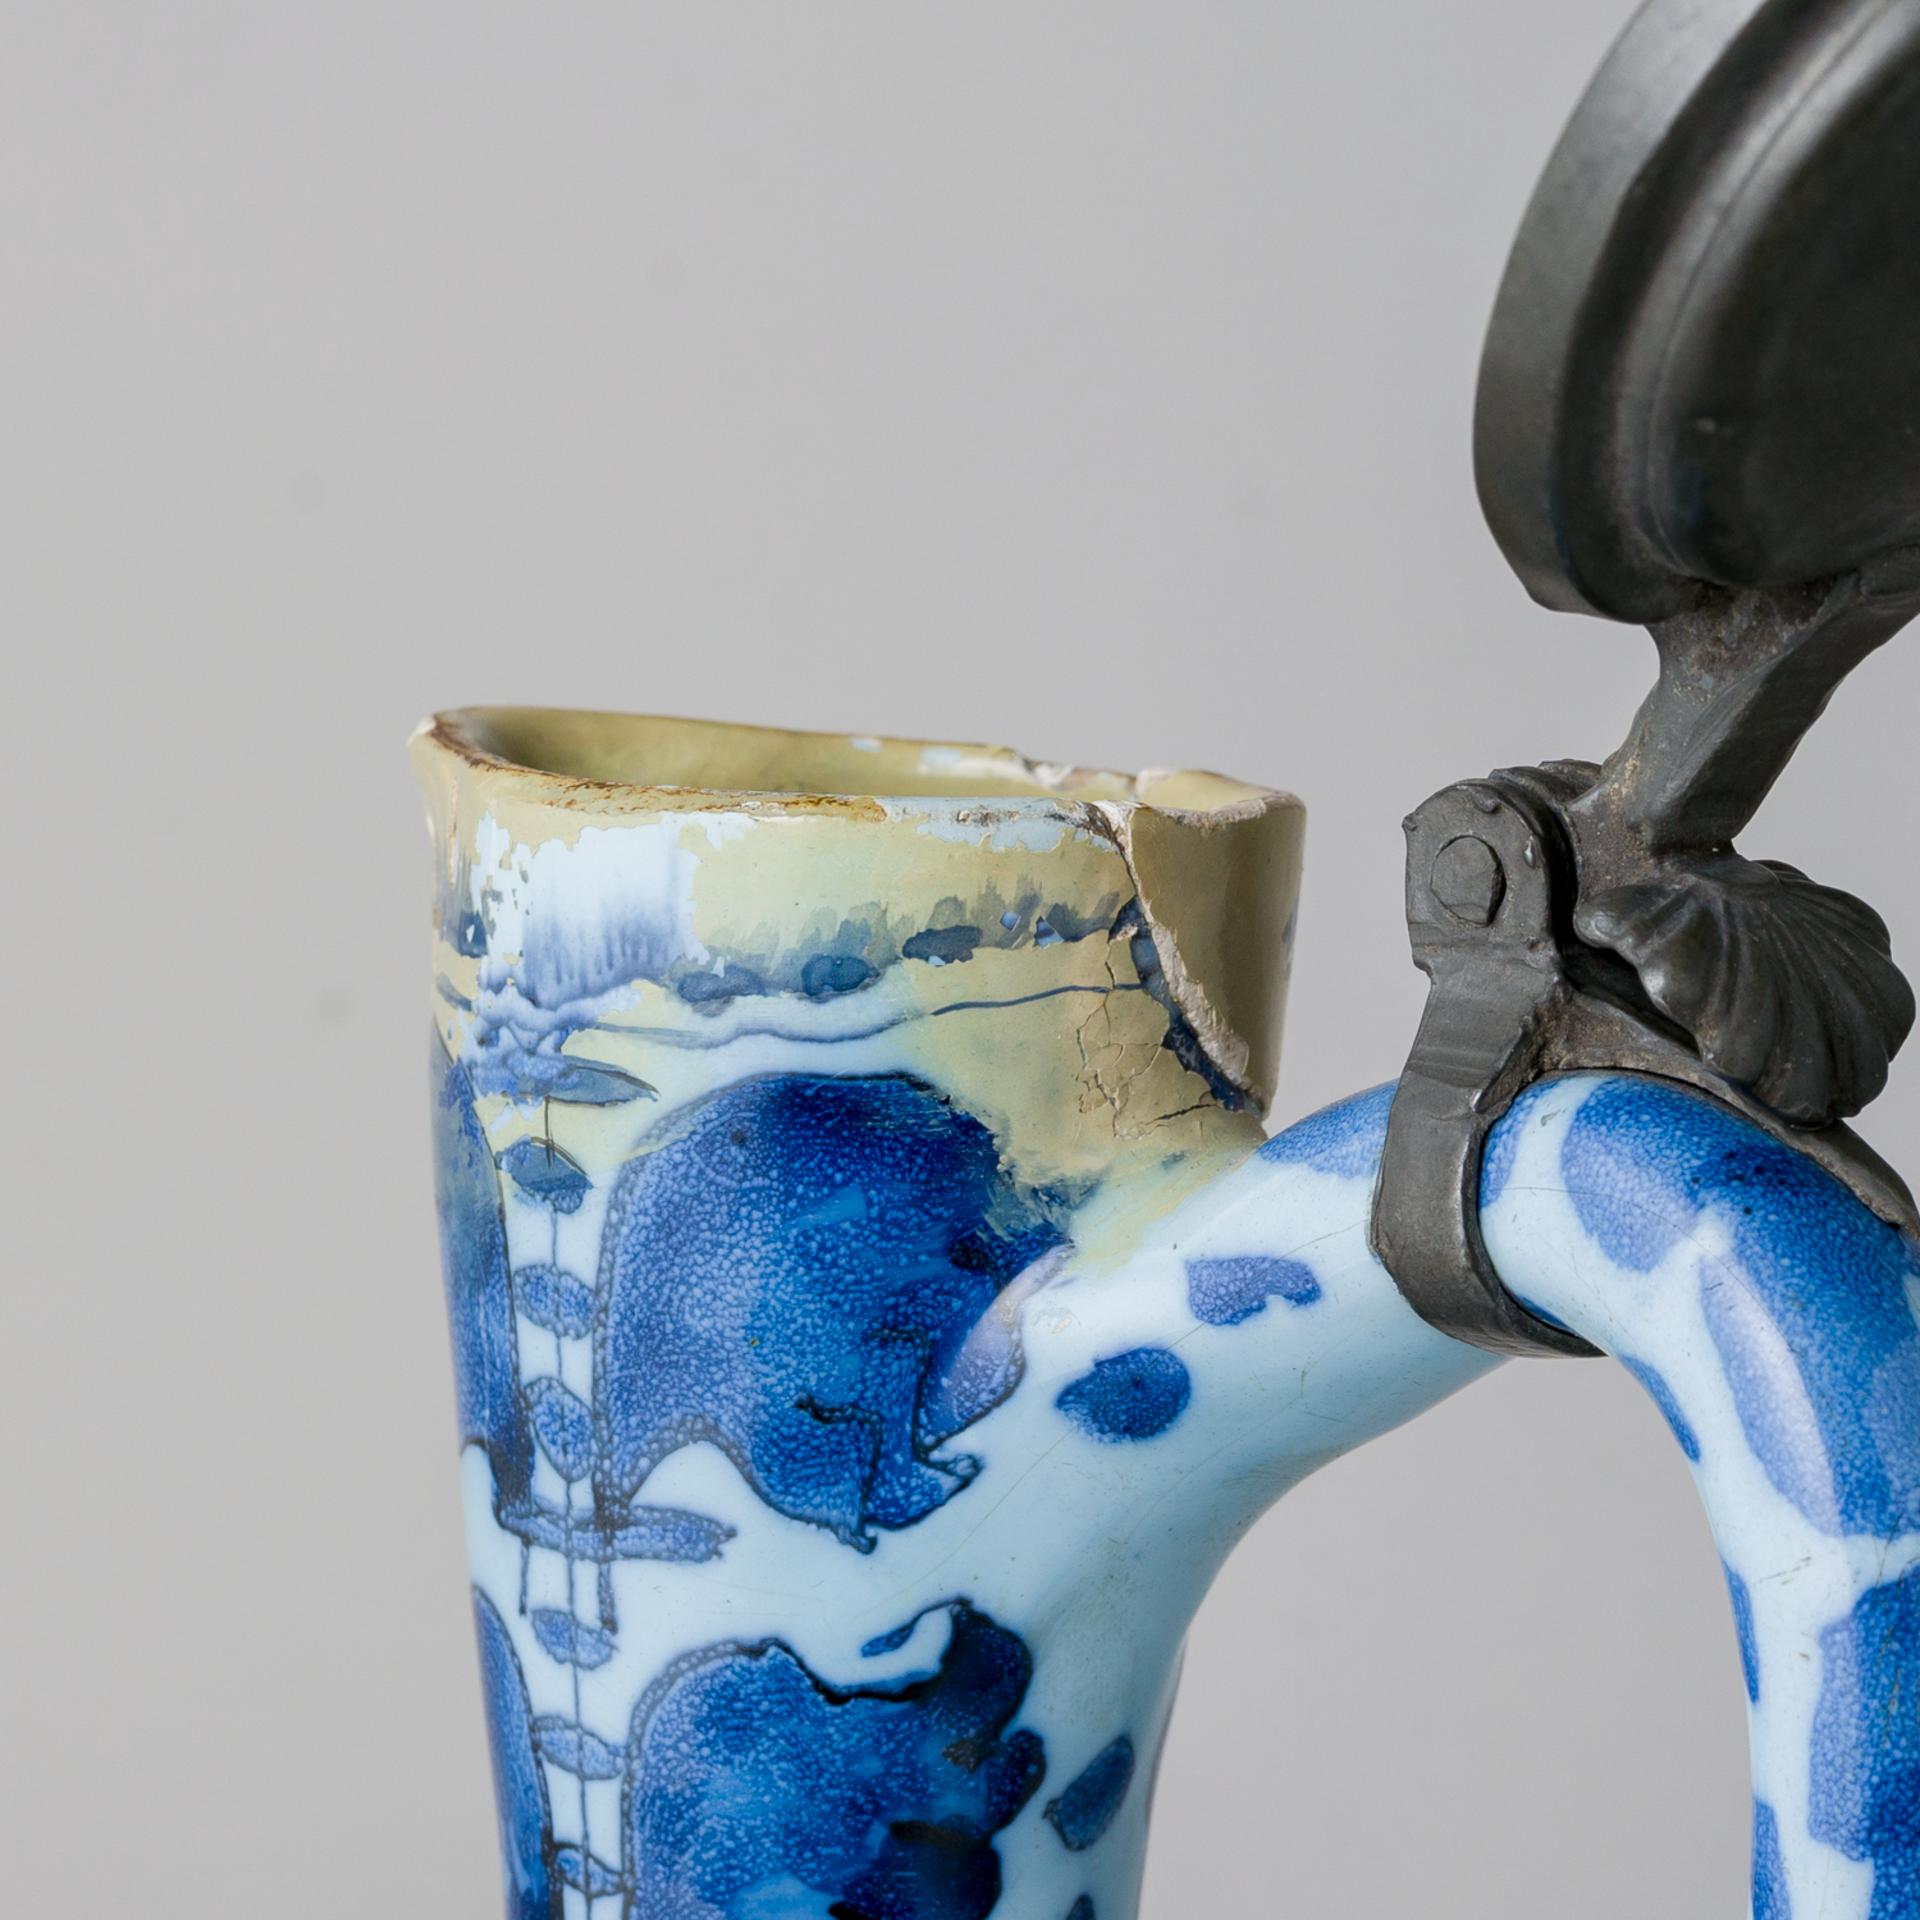 Fayence Delft Krug mit Zinndeckel im Chinesischen Stil  Ende 18. Jhd - Bild 8 aus 12